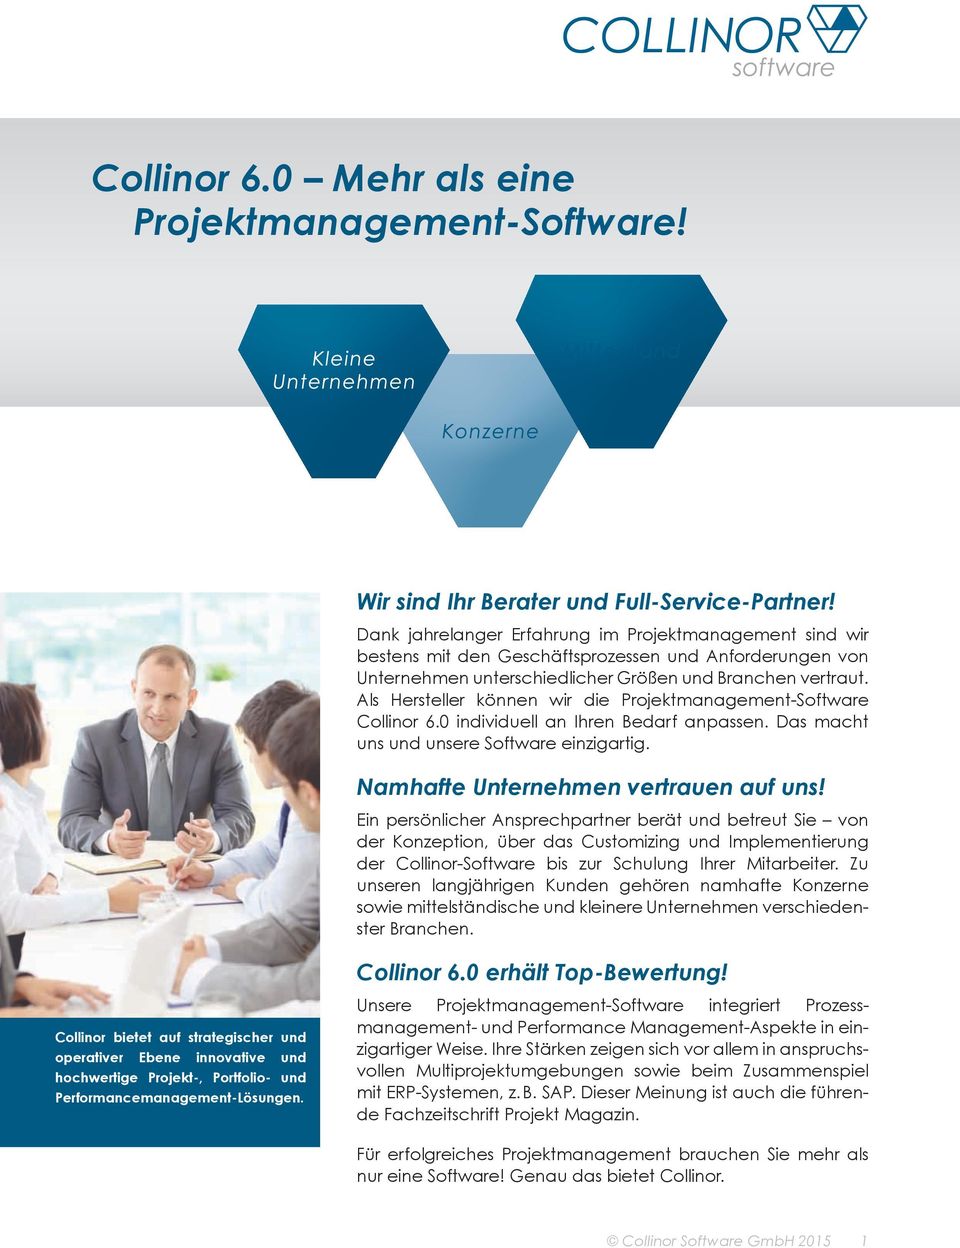 Als Hersteller können wir die Projektmanagement-Software Collinor 6.0 individuell an Ihren Bedarf anpassen. Das macht uns und unsere Software einzigartig. Namhafte Unternehmen vertrauen auf uns!